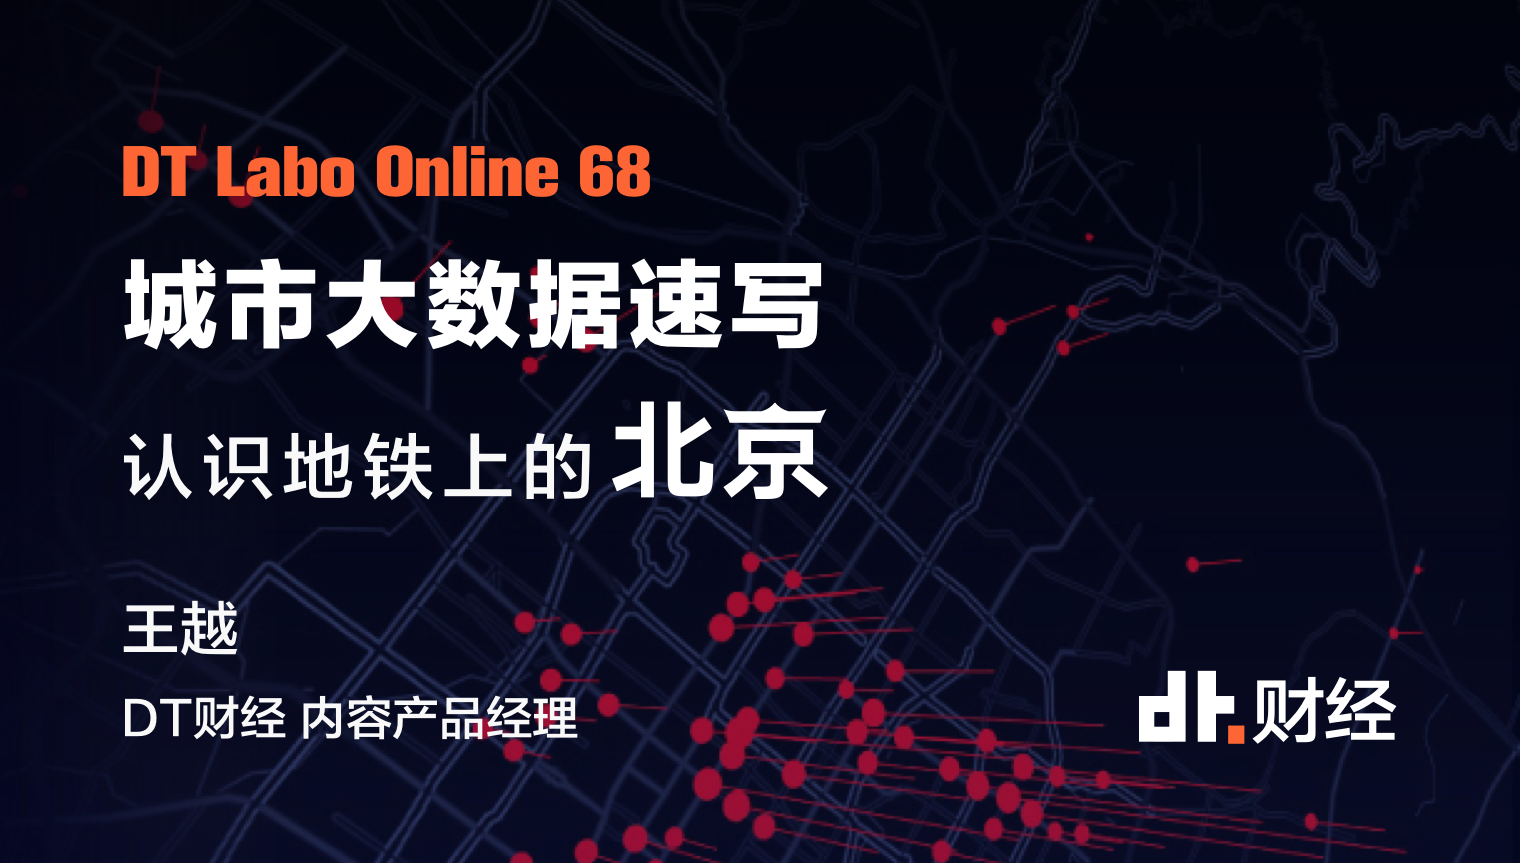 1.7亿条城市大数据带你重新认识北京 | DT Labo Online 68